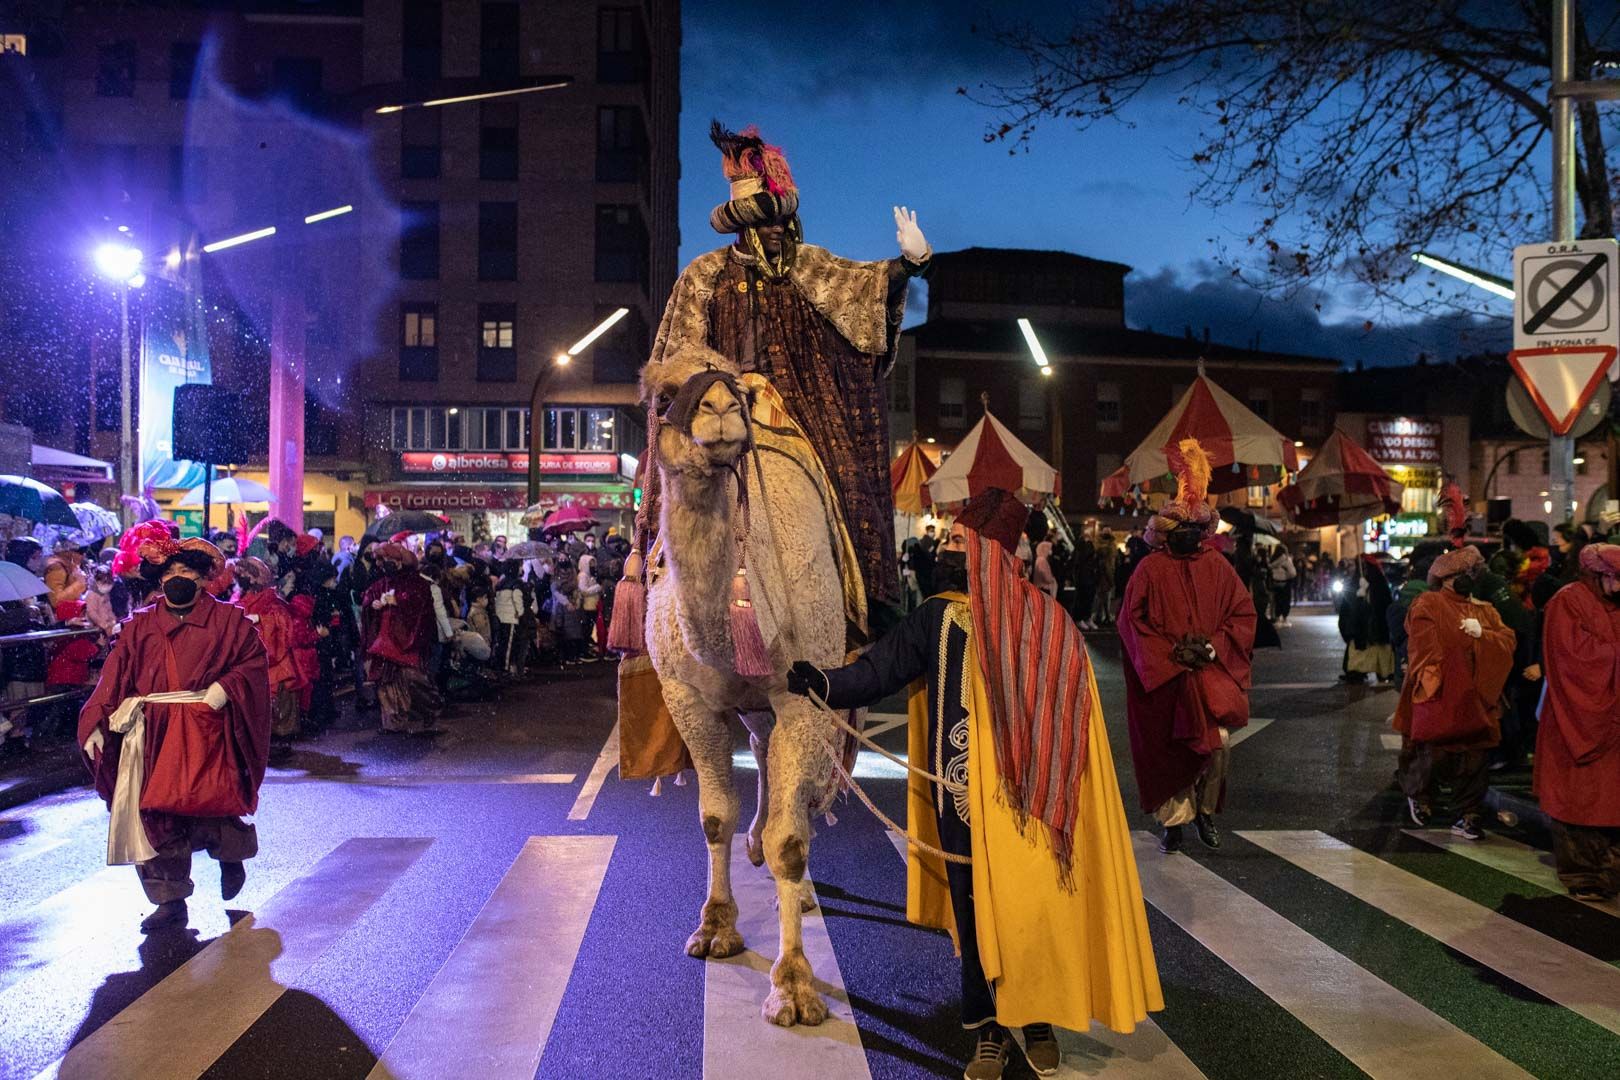 GALERÍA | Las mejores imágenes de la cabalgata de los Reyes Magos